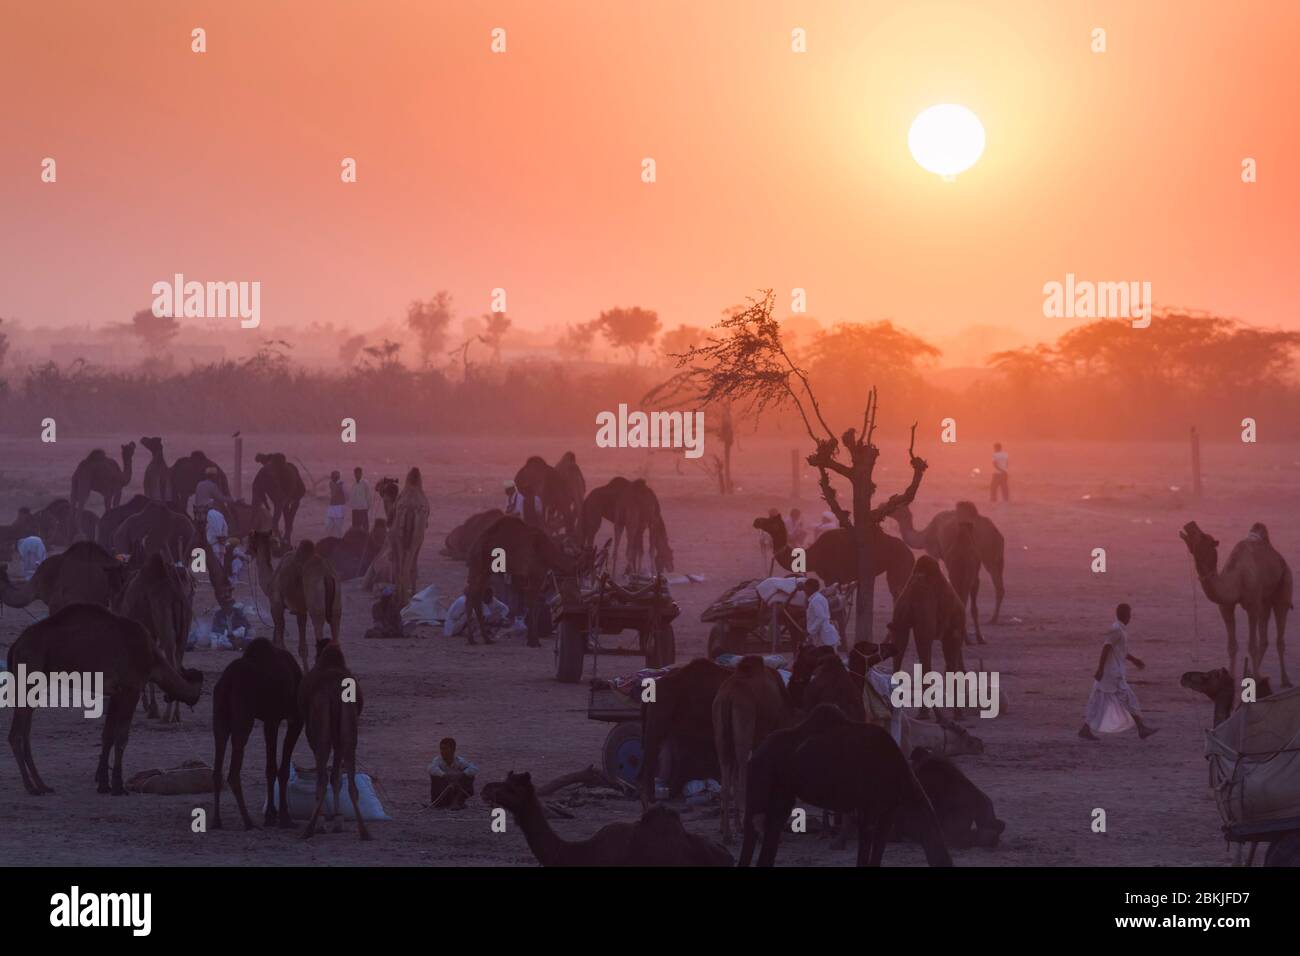 Inde, Rajasthan, Nagaur, foire aux bovins, coucher de soleil sur le camp Banque D'Images